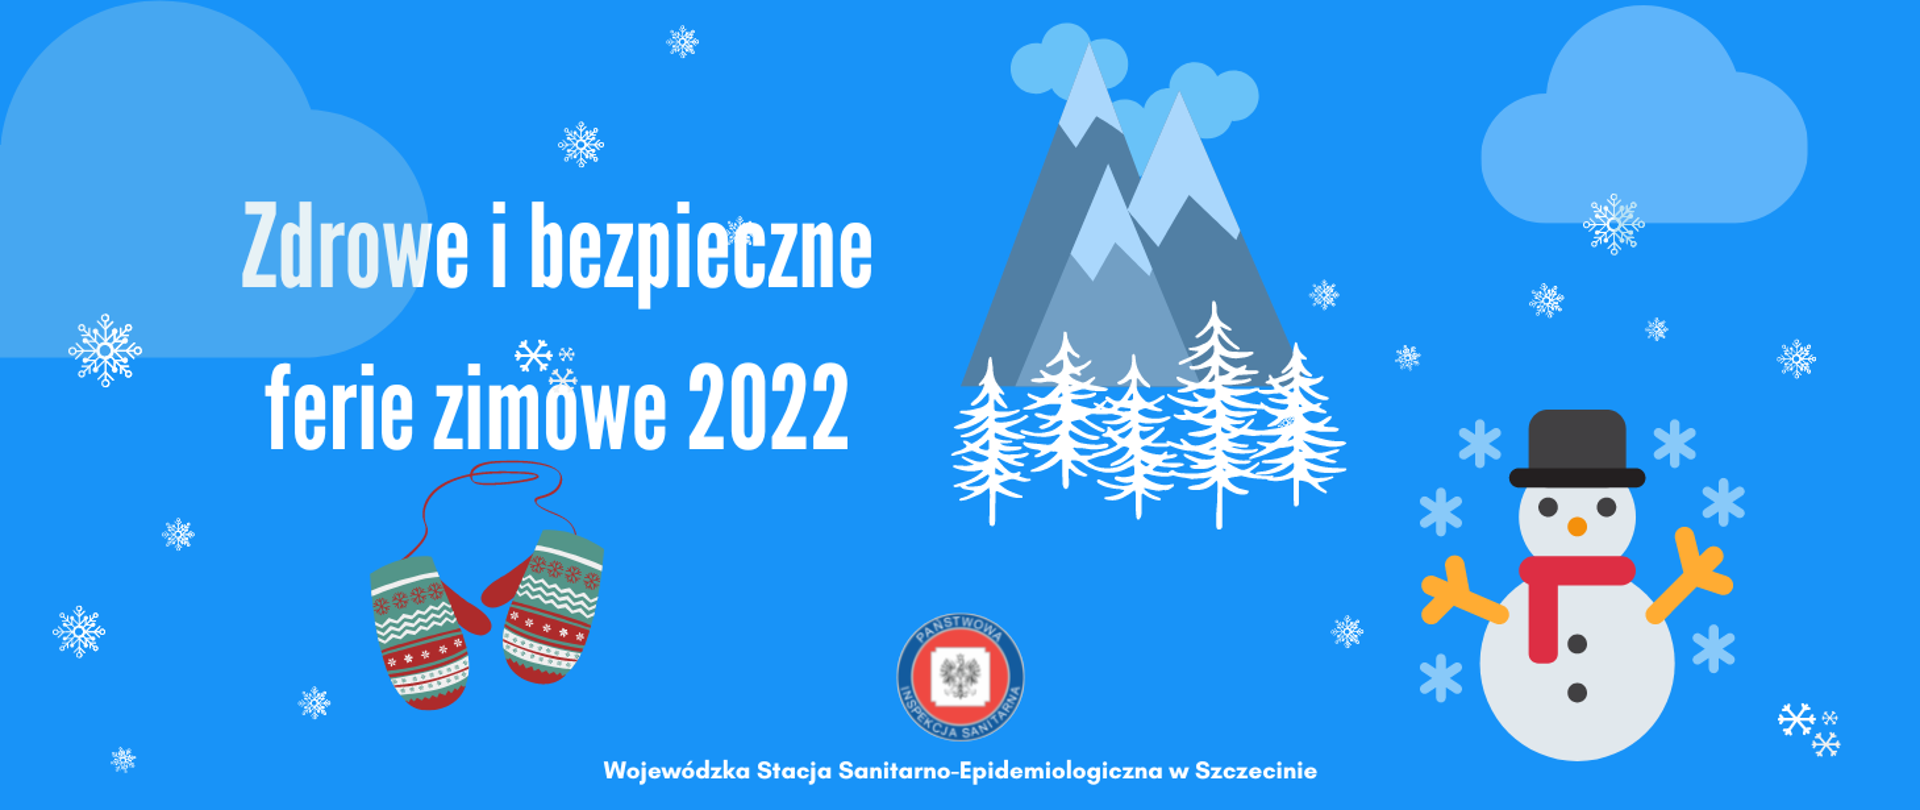 Na błękitnym tle postać bałwanka w kapeluszu, ośnieżone góry i drzewa oraz tekst Zdrowe i bezpieczne ferie zimowe 2022.